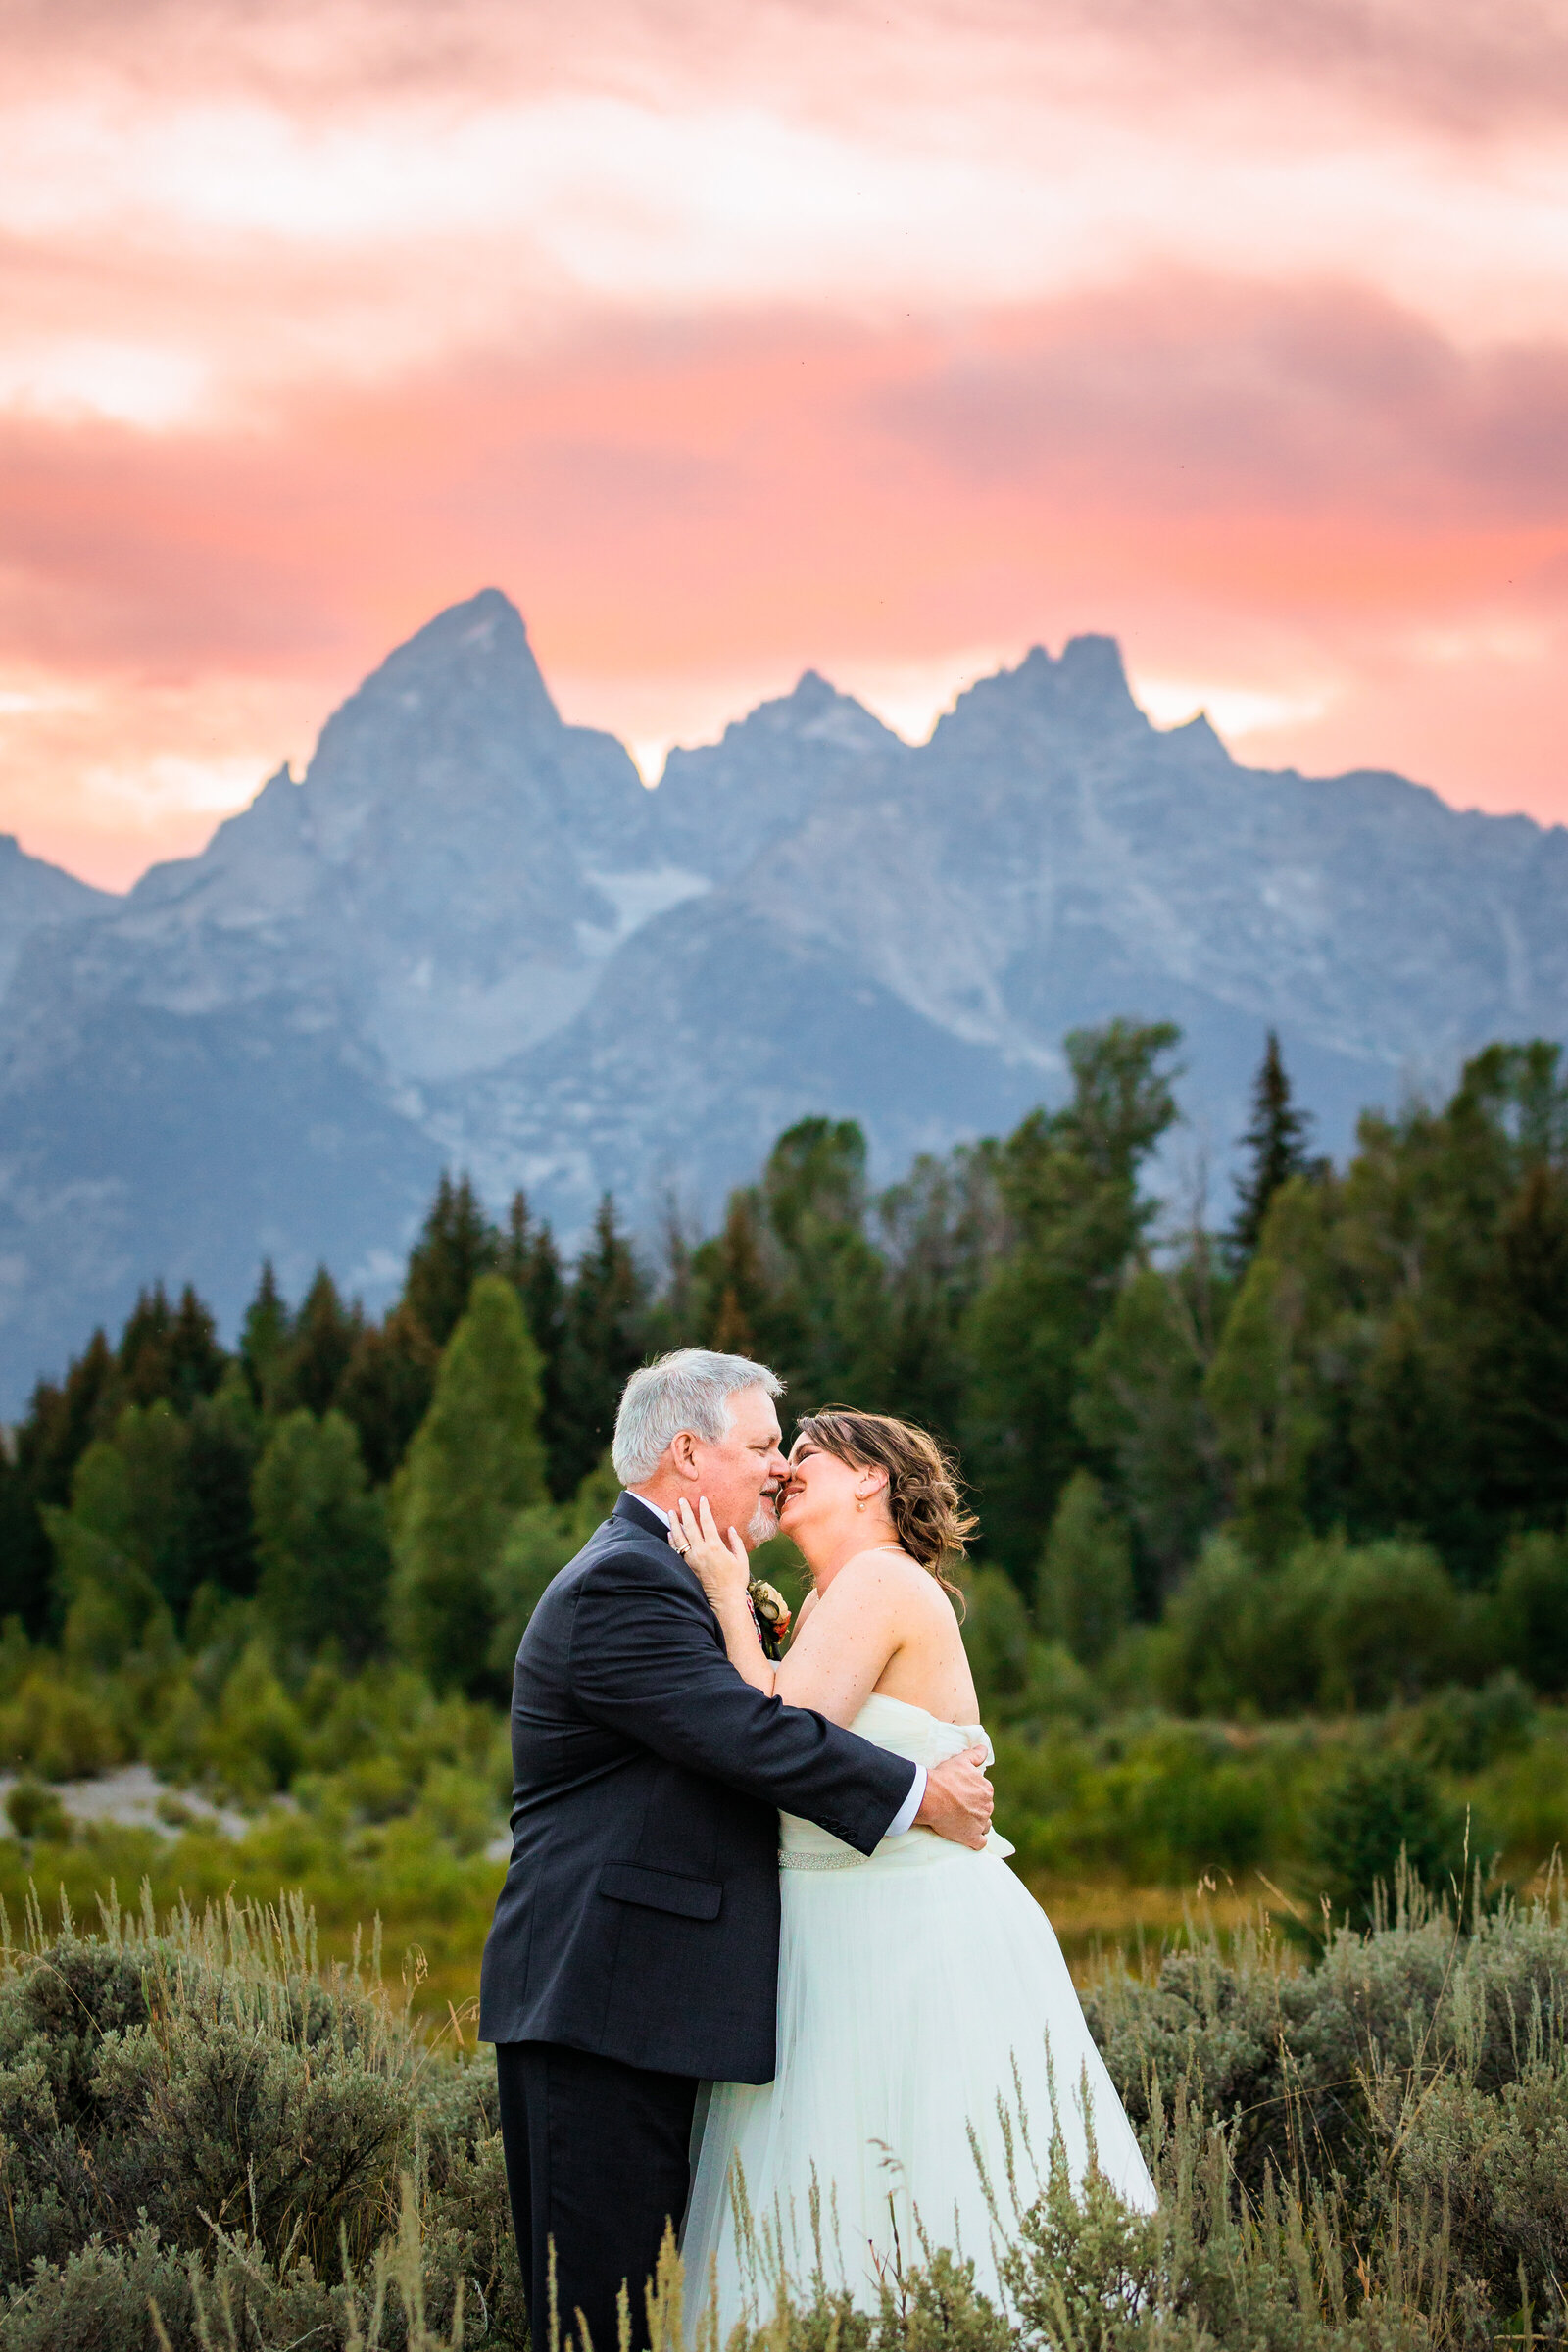 Jackson Hole photographers capture couple during sunset